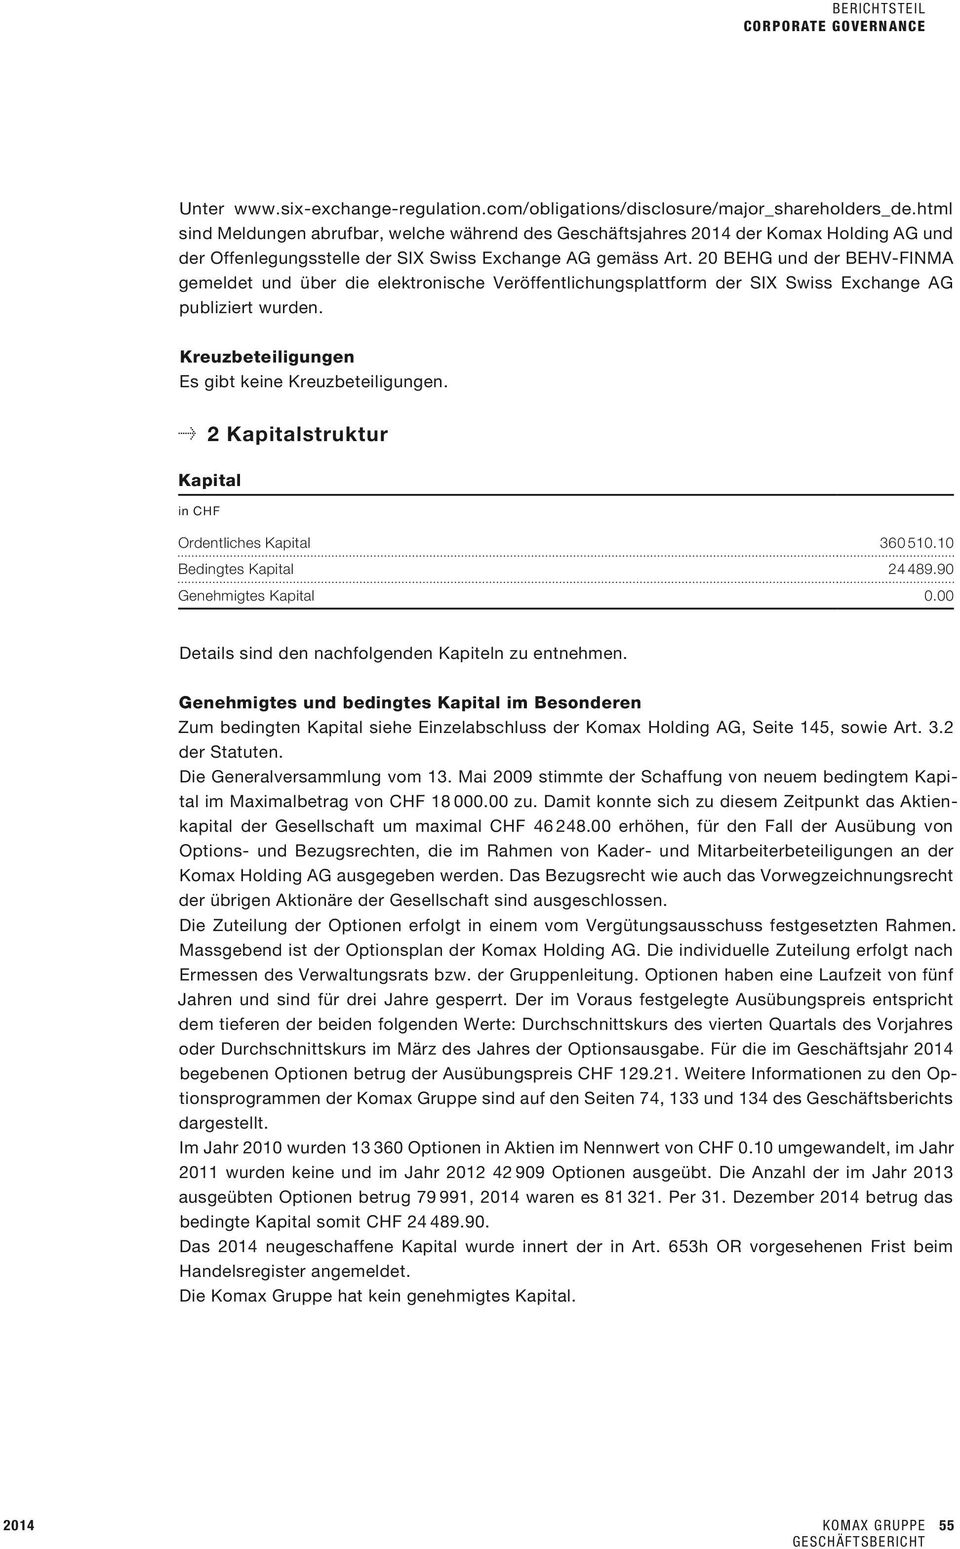 20 BEHG und der BEHV-FINMA gemeldet und über die elektronische Veröffentlichungsplattform der SIX Swiss Exchange AG publiziert wurden. Kreuzbeteiligungen Es gibt keine Kreuzbeteiligungen.